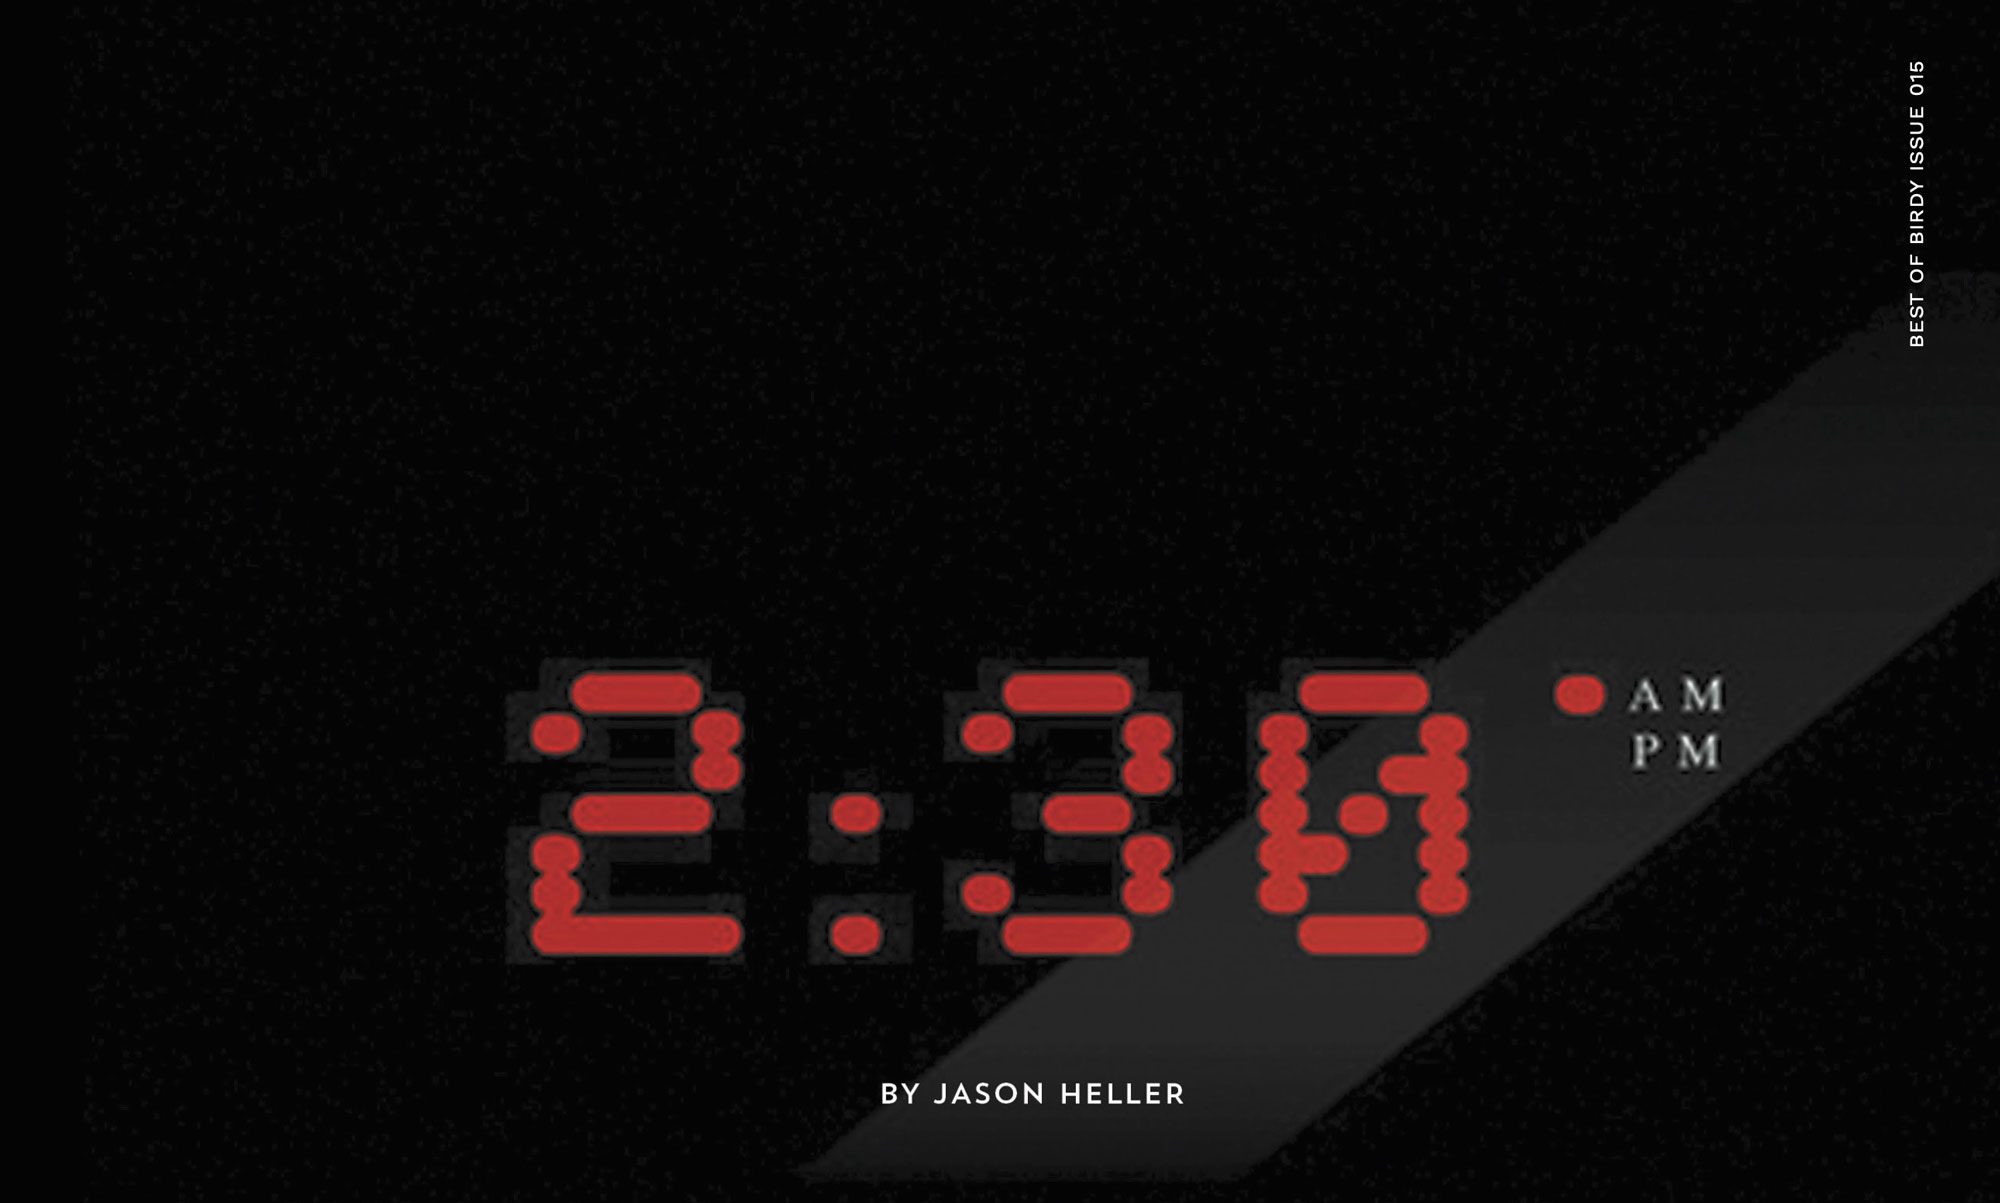 2:30 AM/PM by Jason Heller